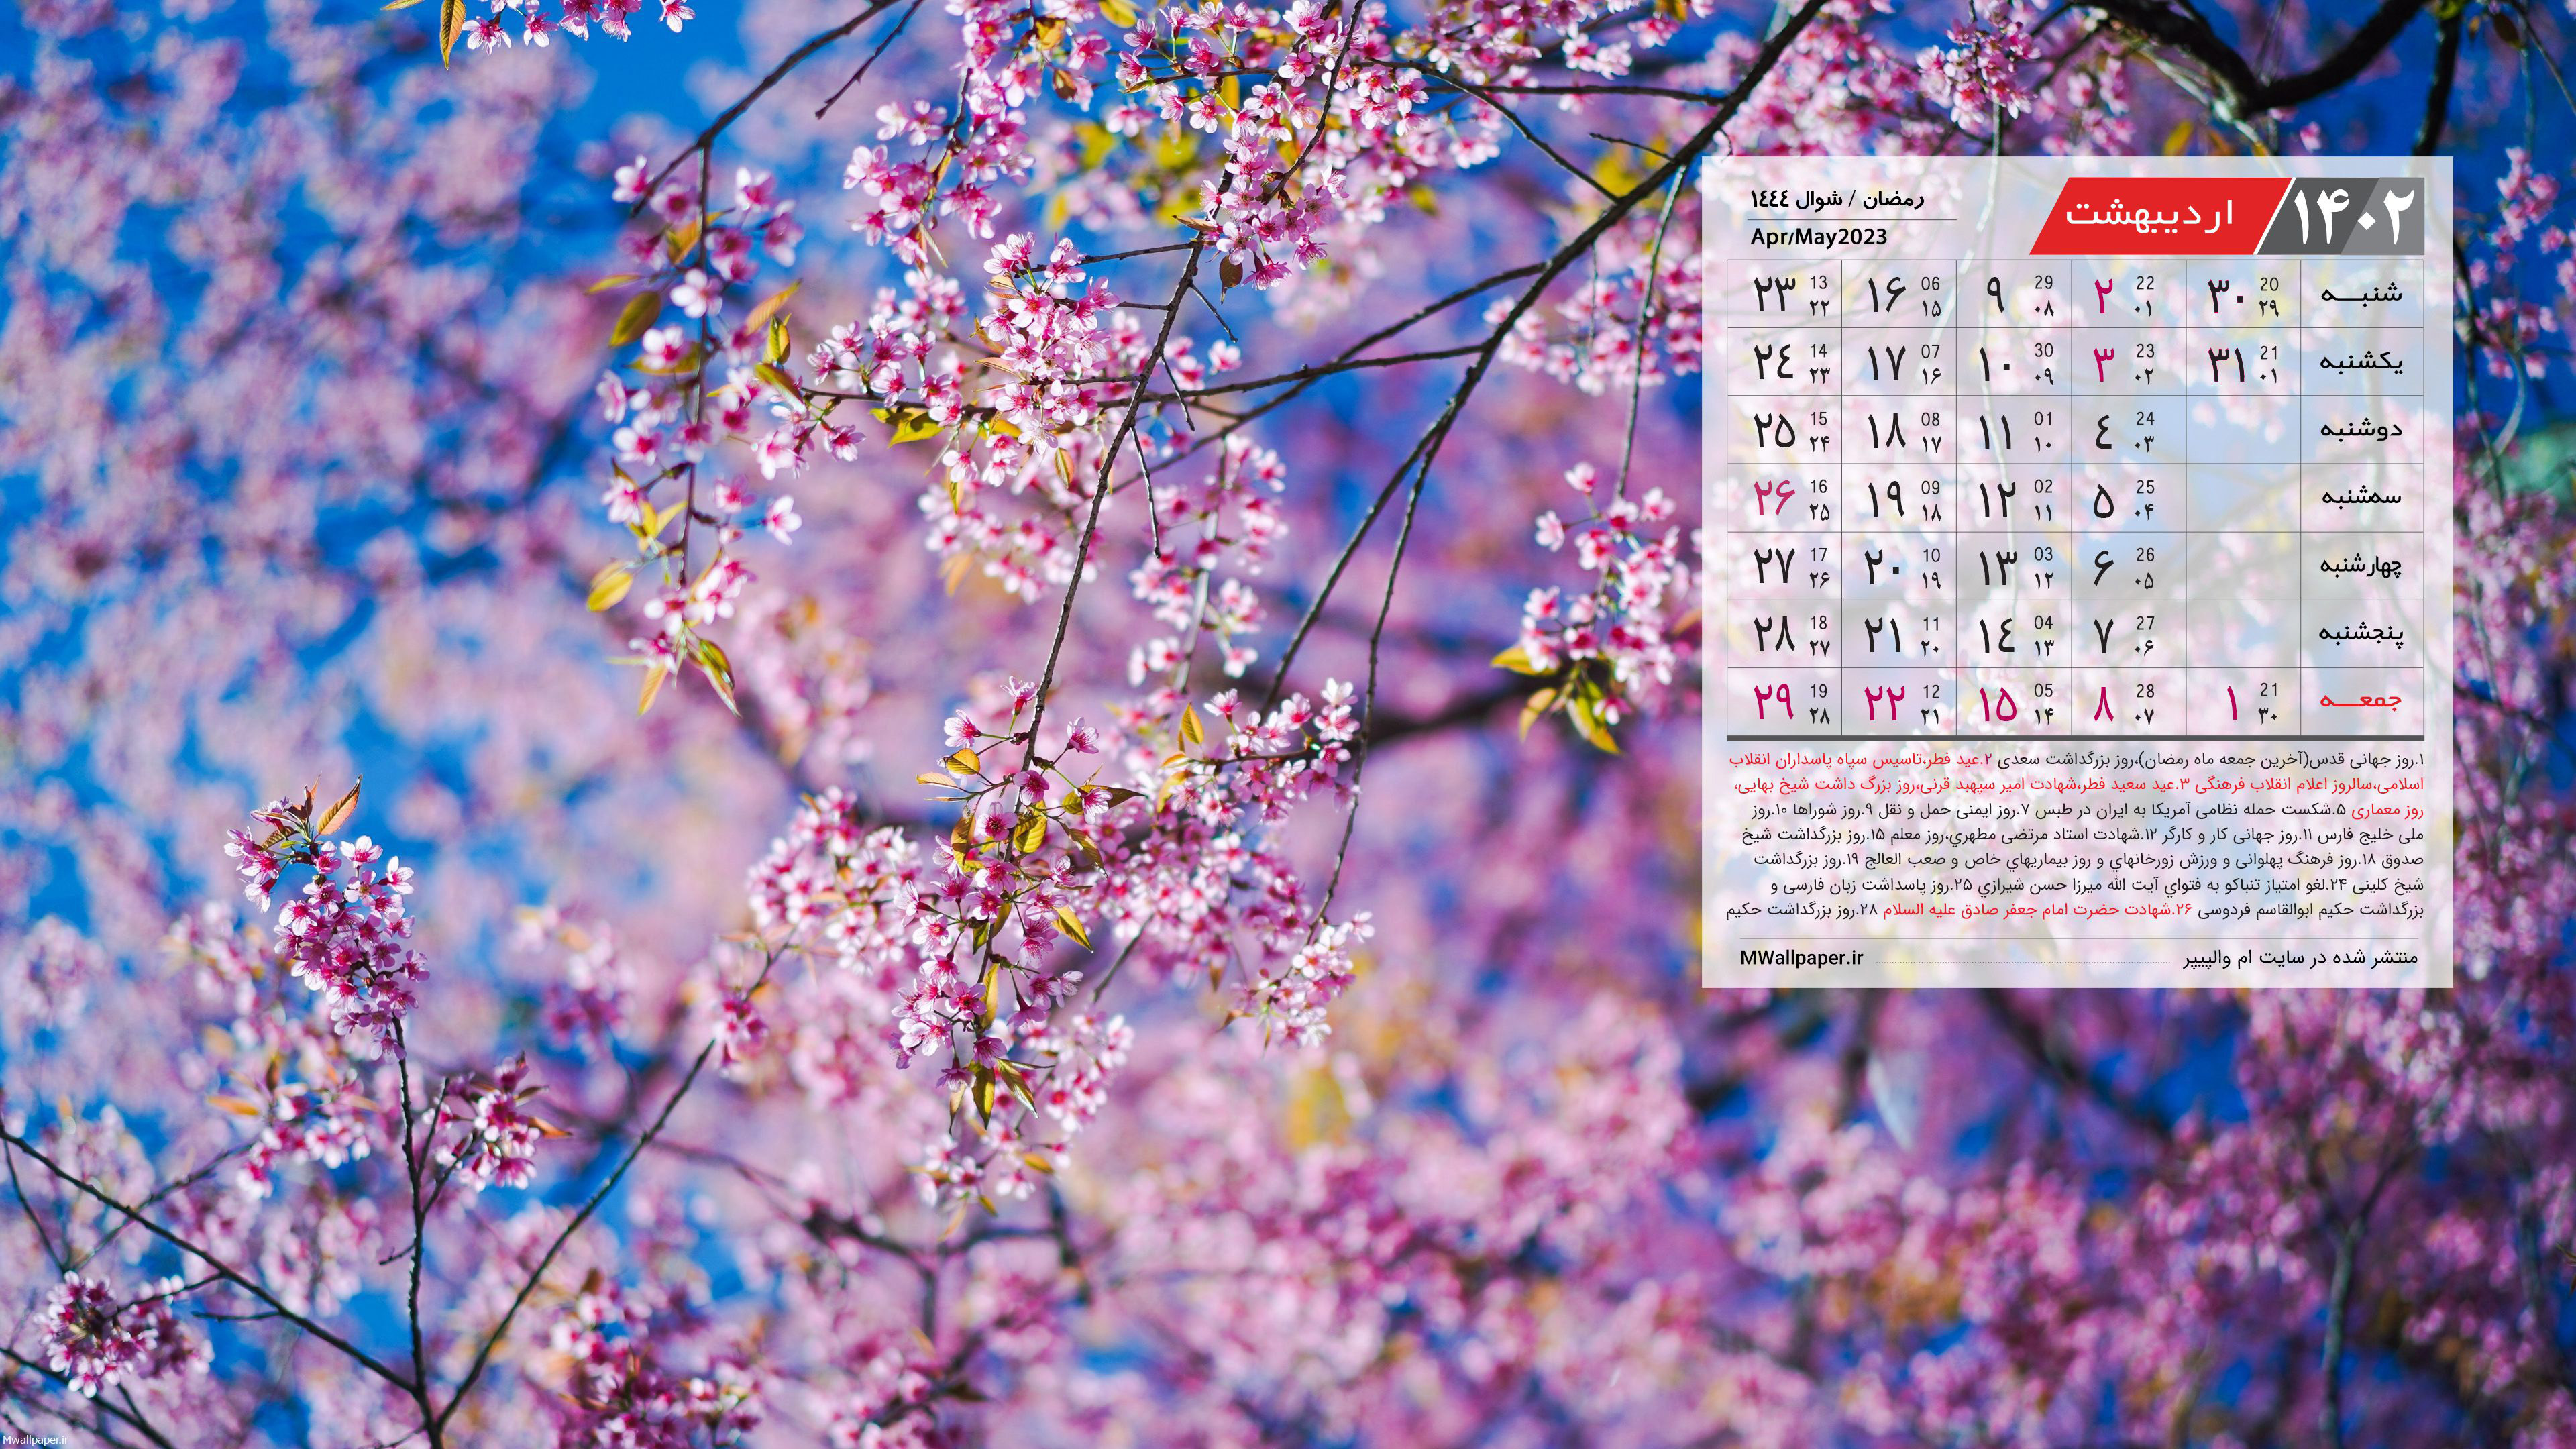 والپیپر تقویم اردیبهشت 1402 با عکس شکوفه های گیلاس بهاری